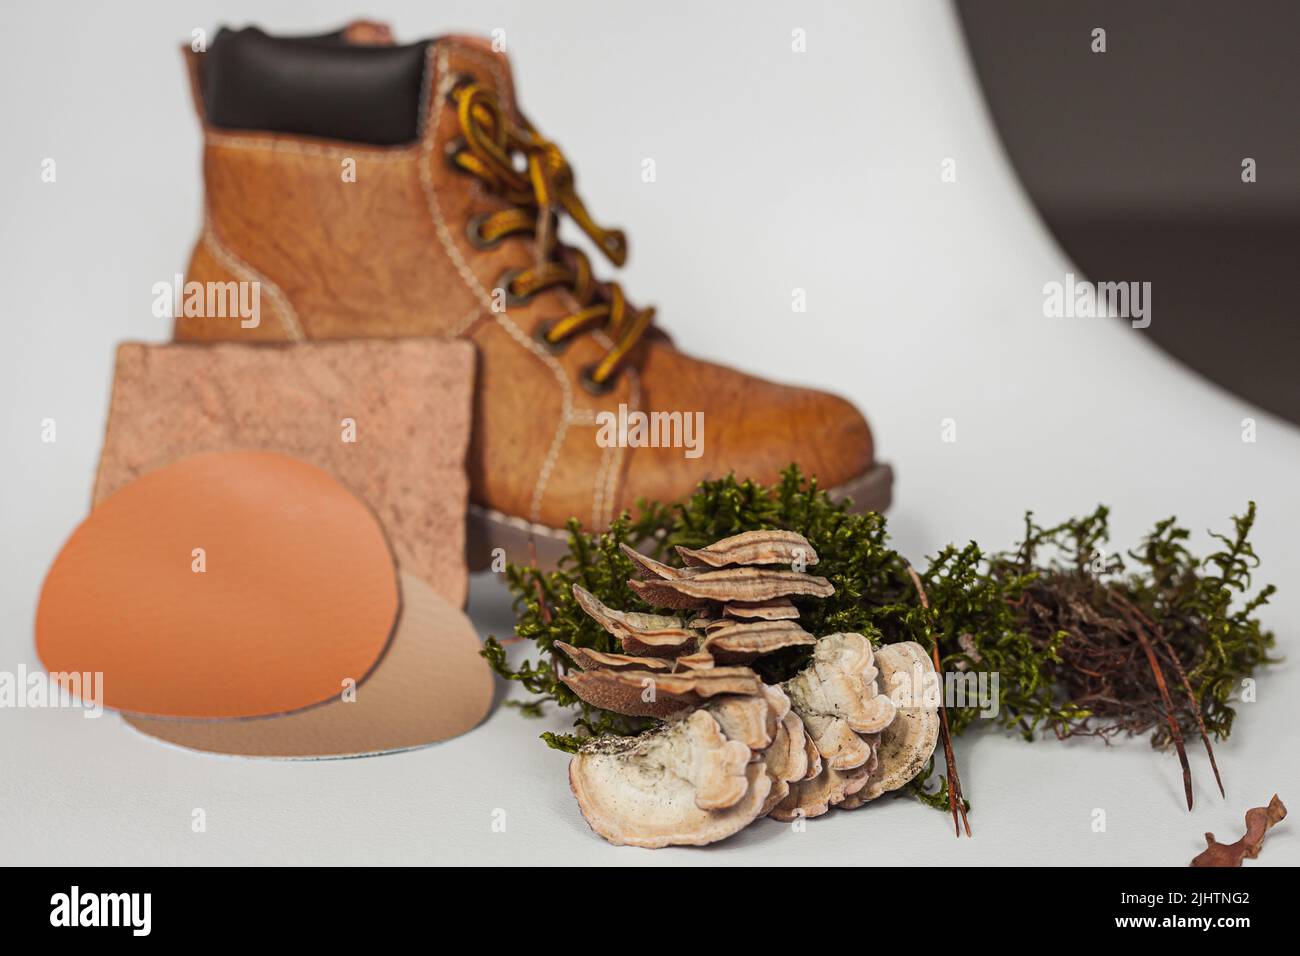 Chaussures en cuir vegan de mycélium de champignons. Échantillons de cuir bio vegan, concept écologique Banque D'Images